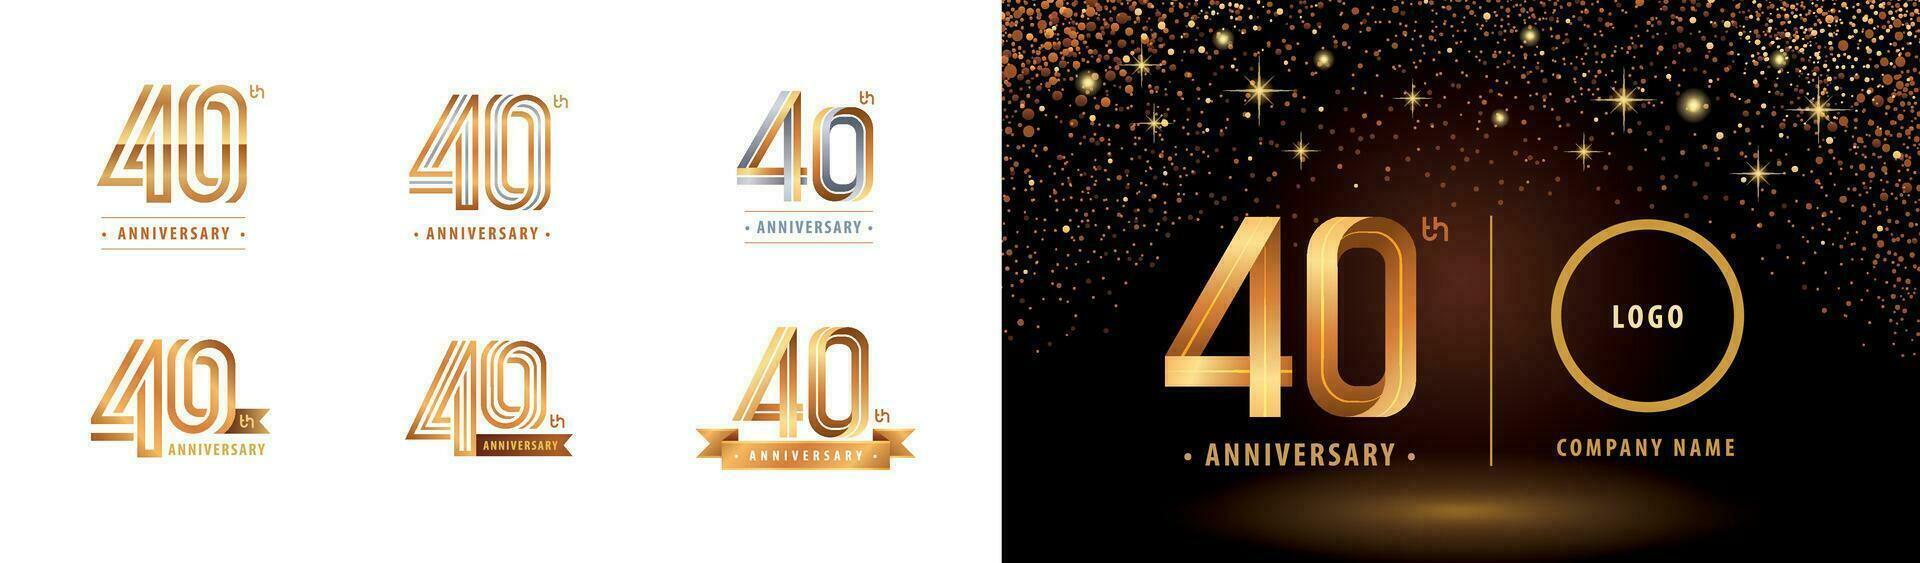 einstellen von 40 .. Jahrestag Logo Design, vierzig Jahre feiern Jahrestag Logo vektor